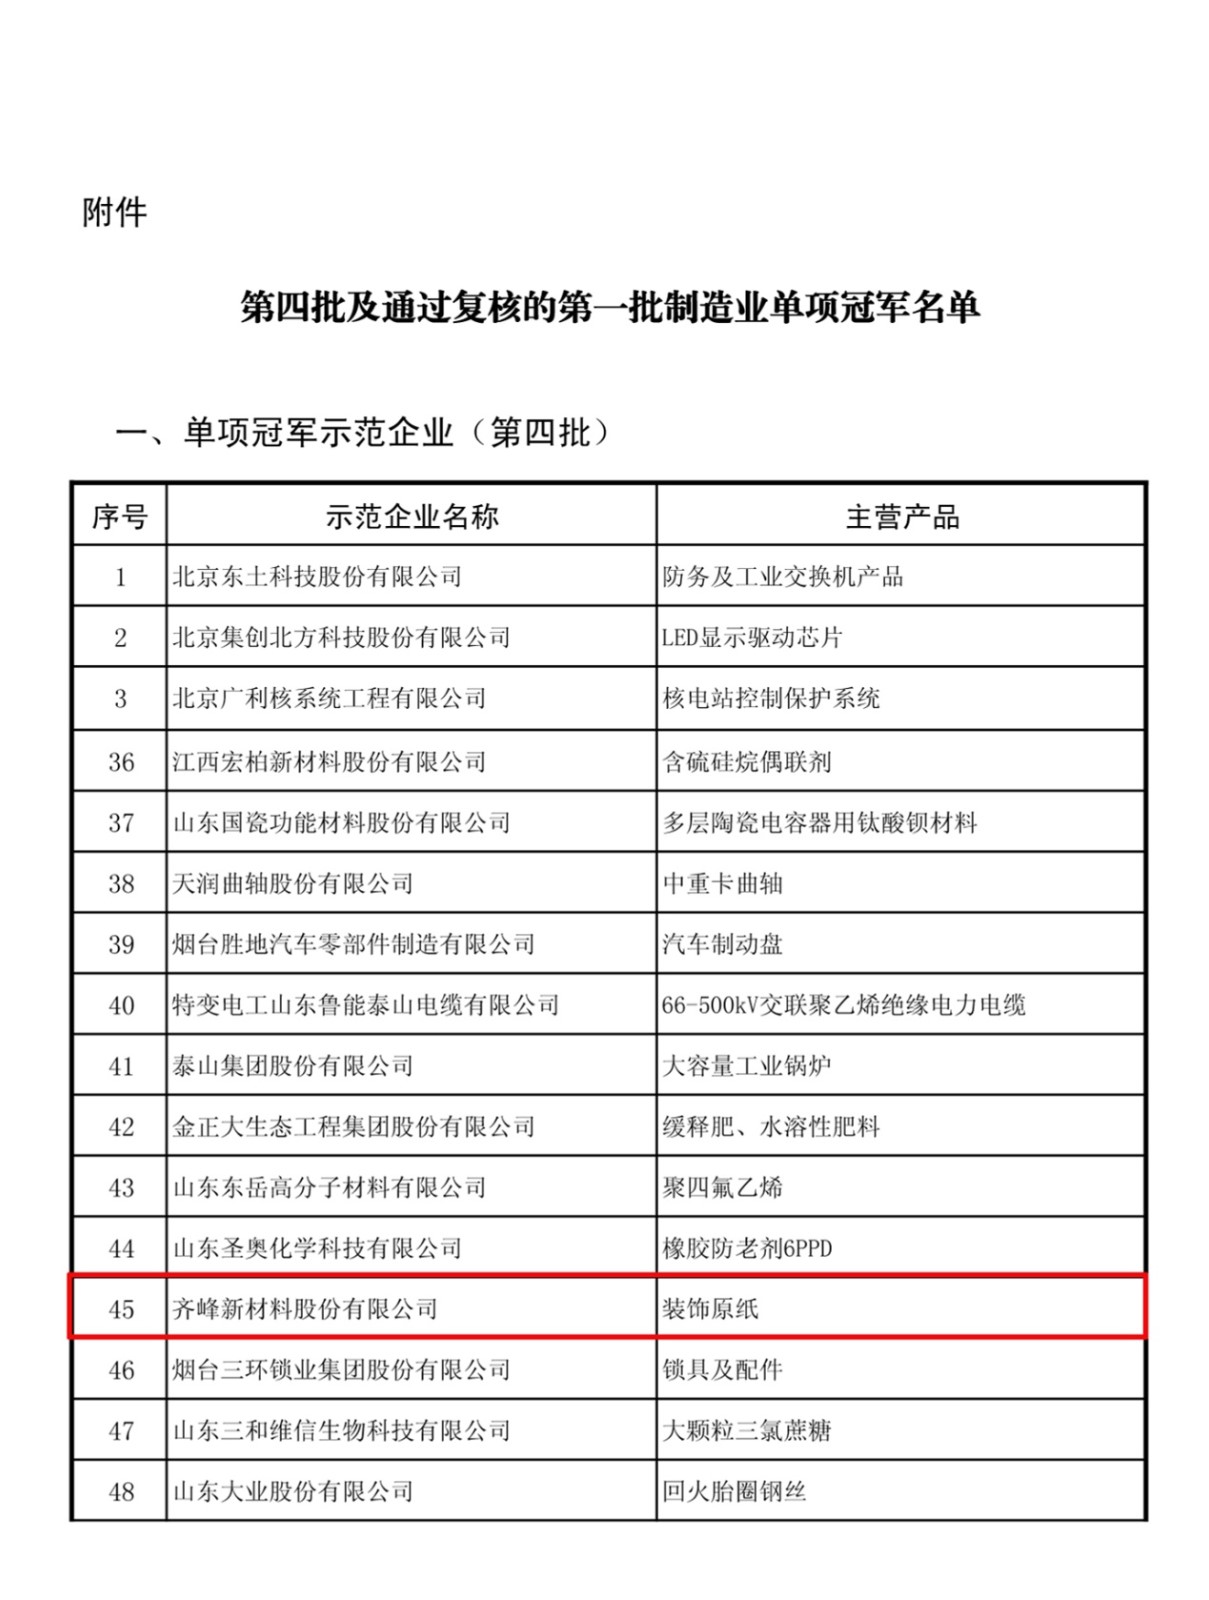 齐峰被评为中国制造业单项冠军